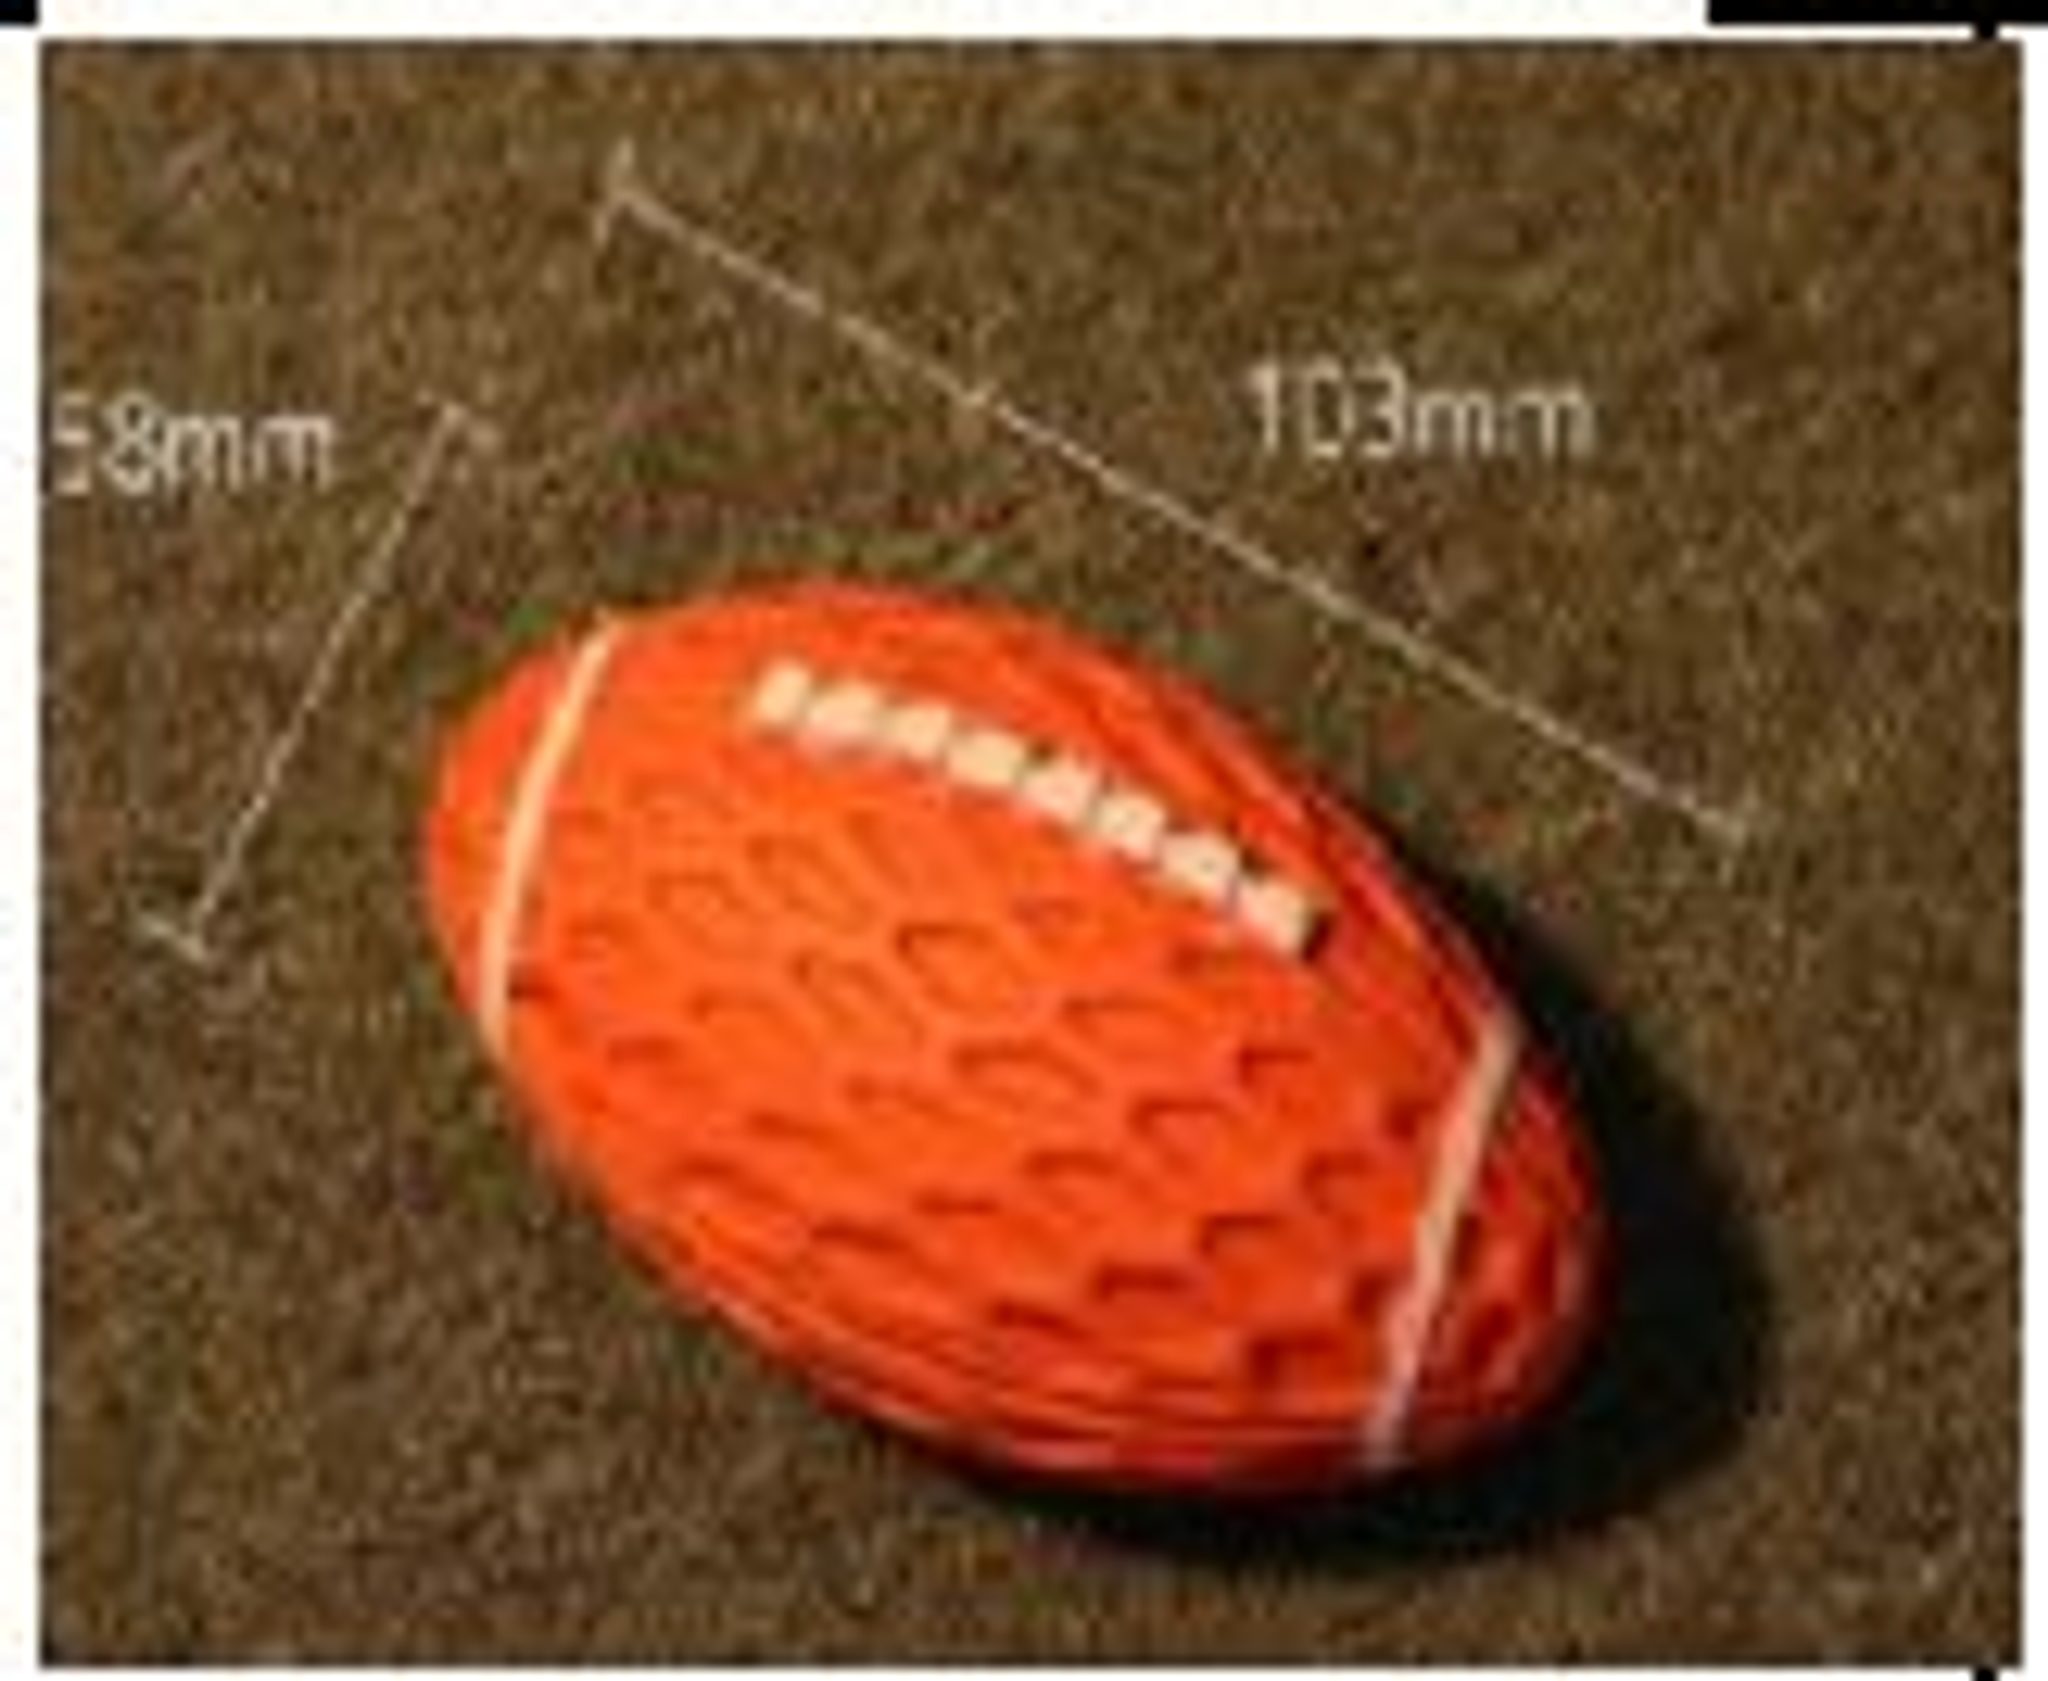 Reedog Rugby ball, gumová pískací hračka - Large 15 cm